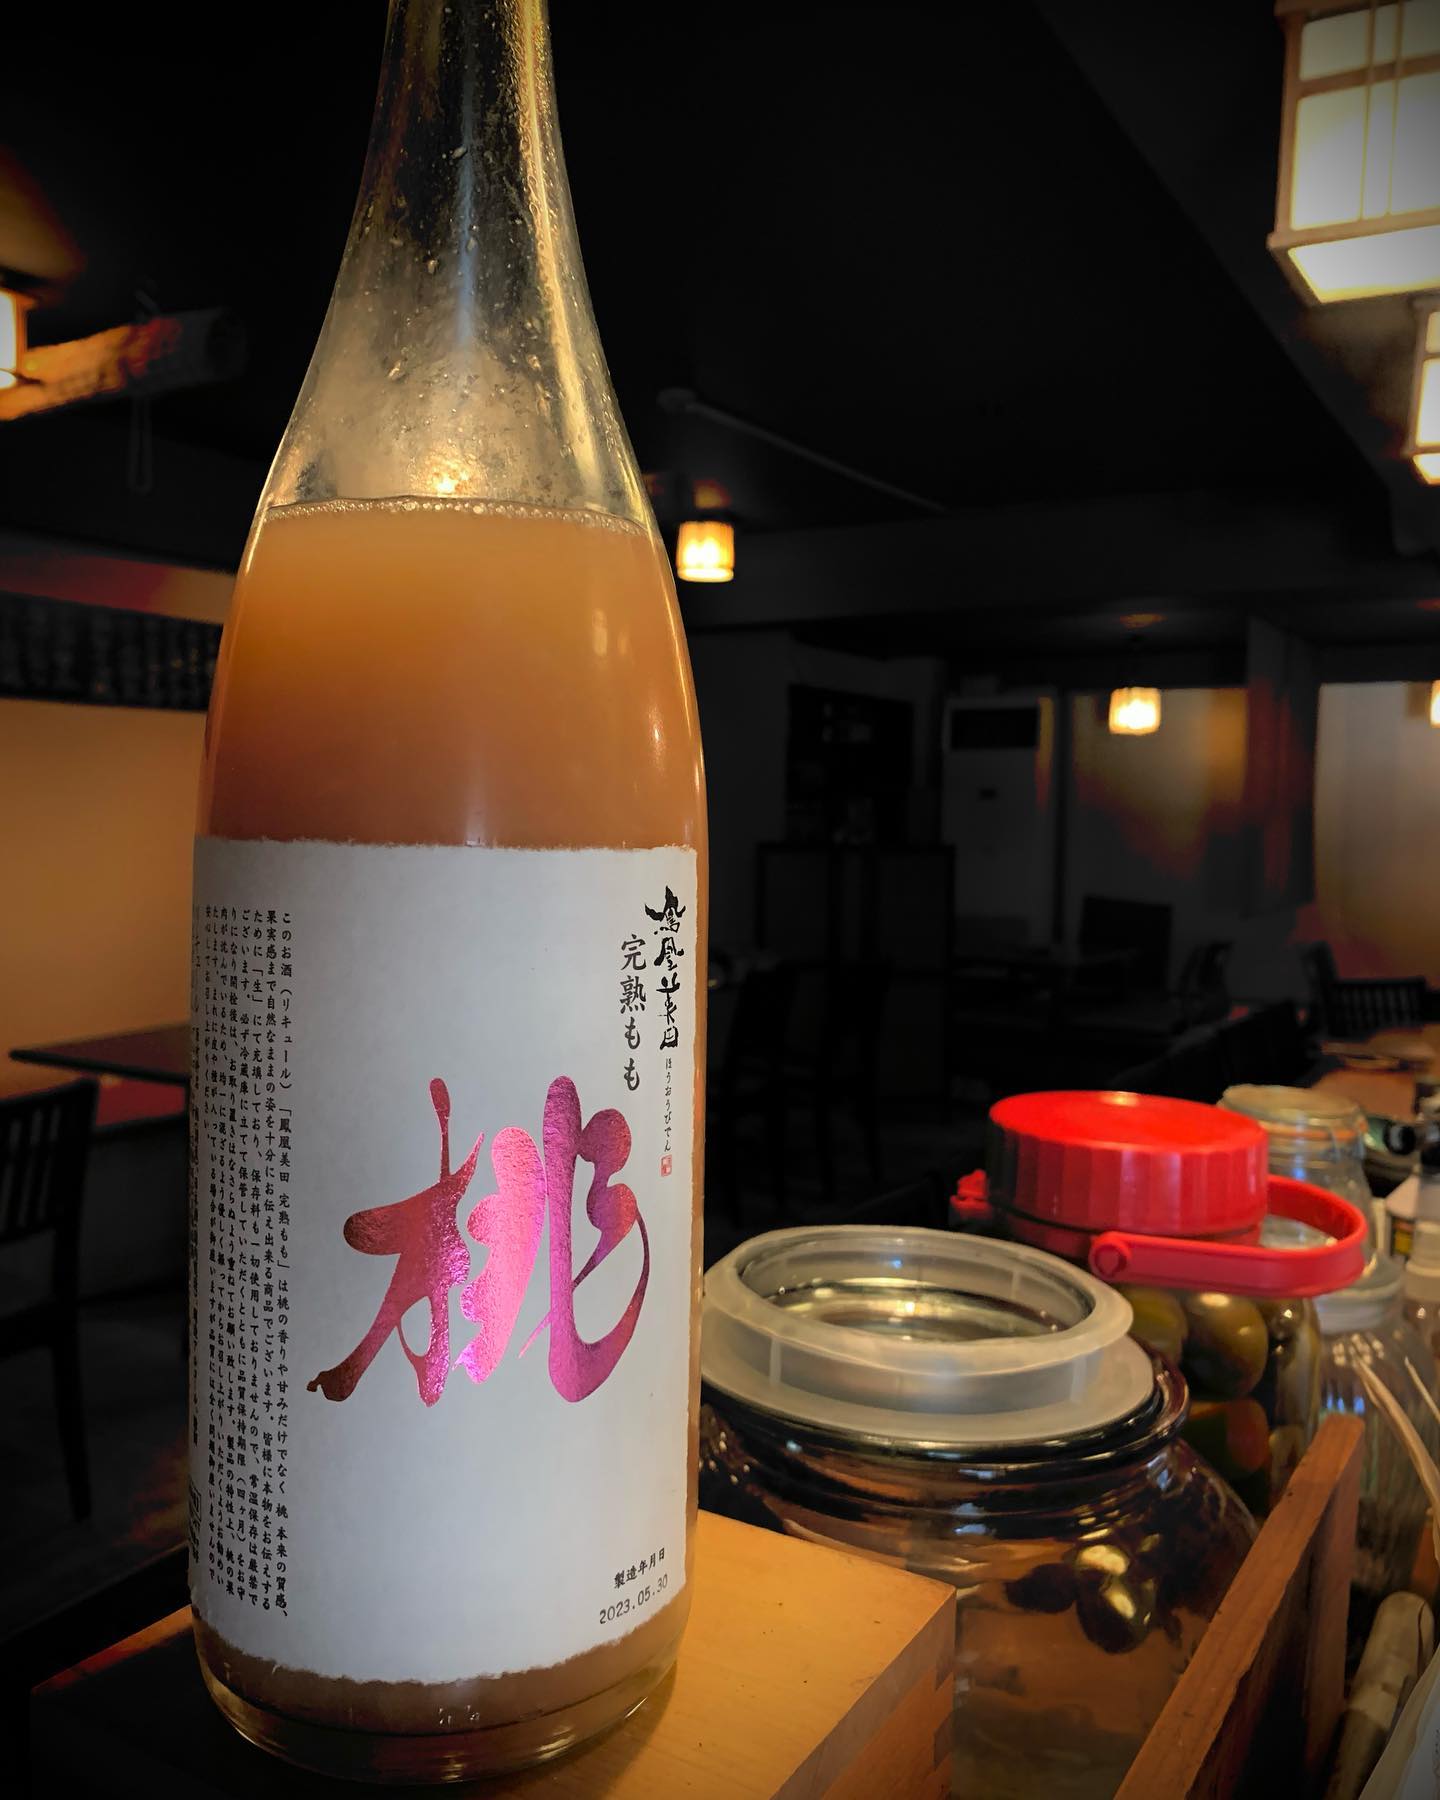 鳳凰美田の完熟桃酒入荷しました️
桃果肉がゴロゴロ入っていてロックで飲むと桃の優しい甘さが癖になっちゃいます
 #